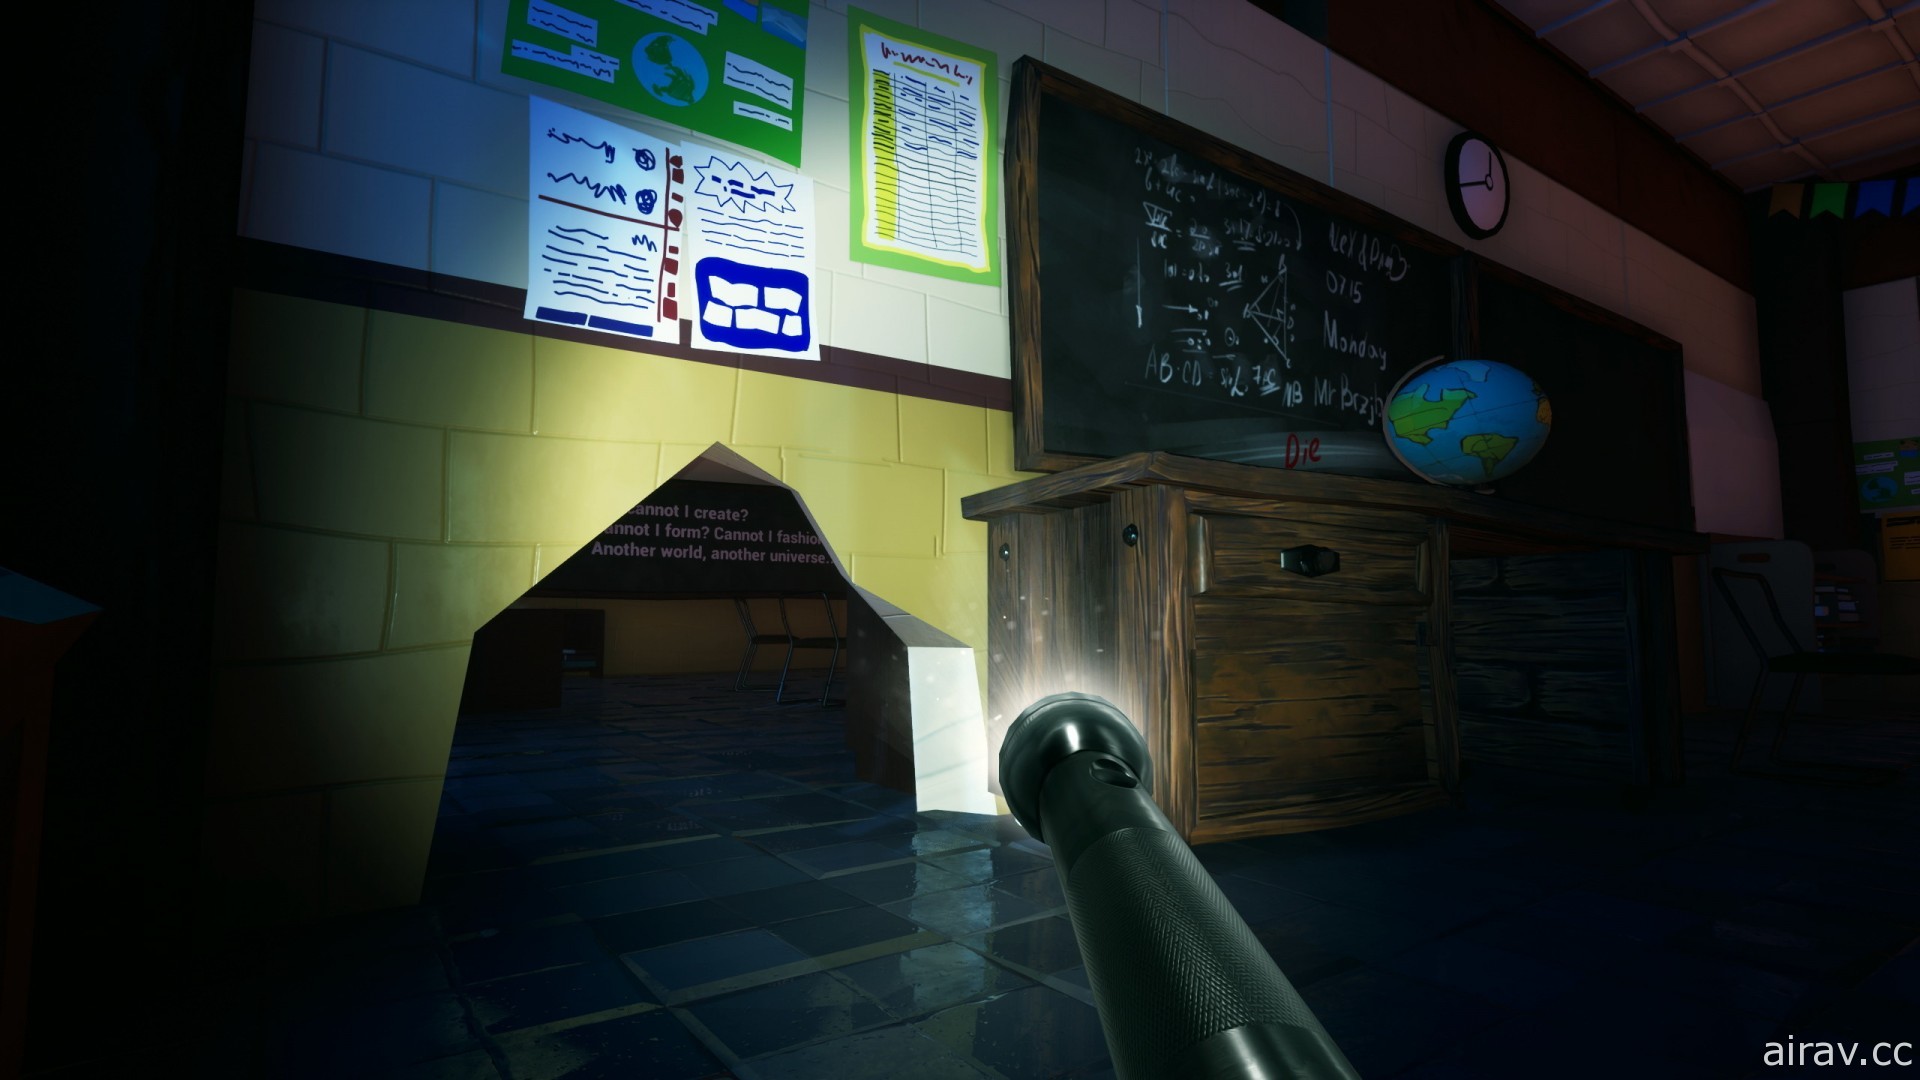 匿踪恐怖游戏《坟木高中》21 日展开抢先体验 逃离不断变化的迷宫与老师